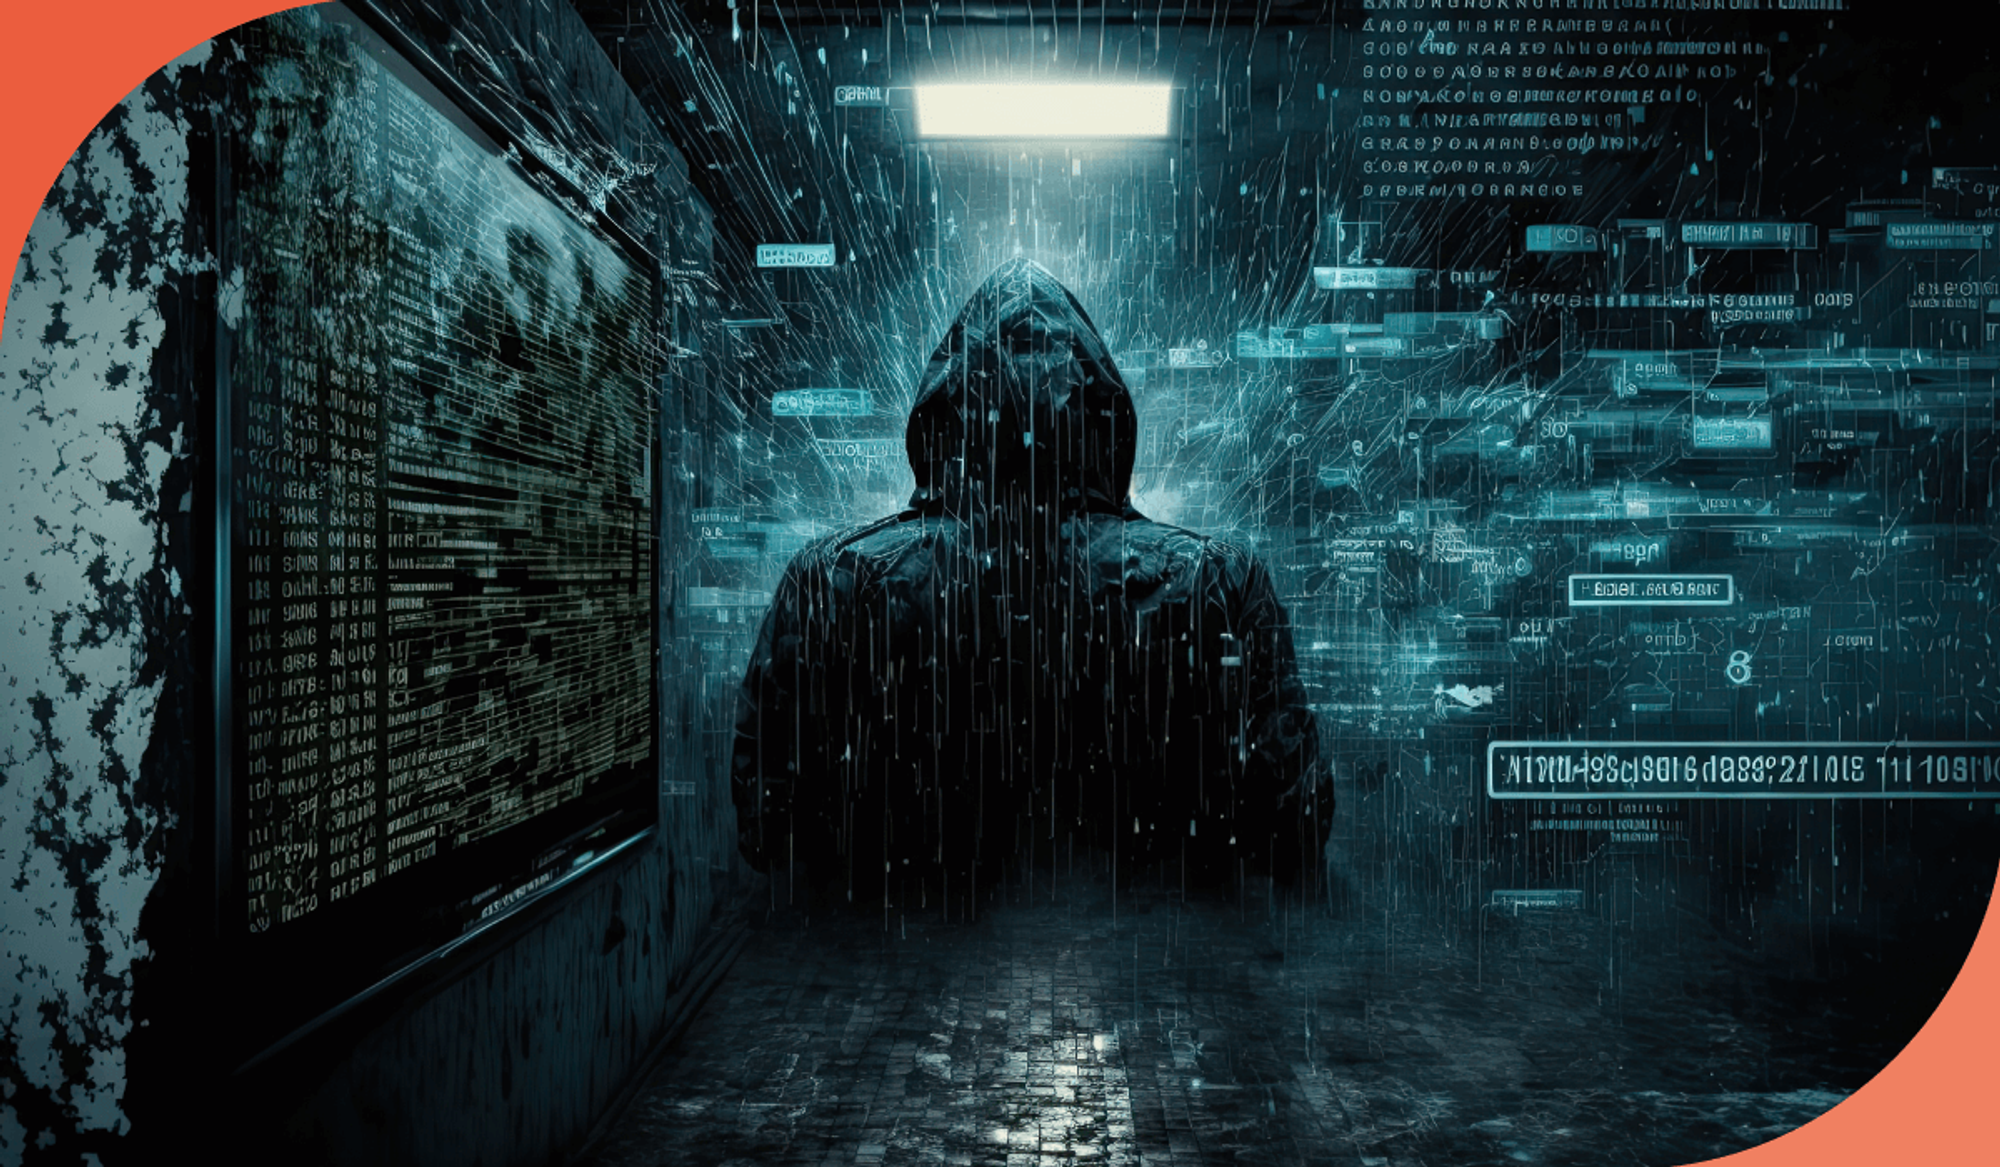 imagem de um rapaz de costas com um casaco preto em alusão aos hackers que colocam em risco a cibersegurança